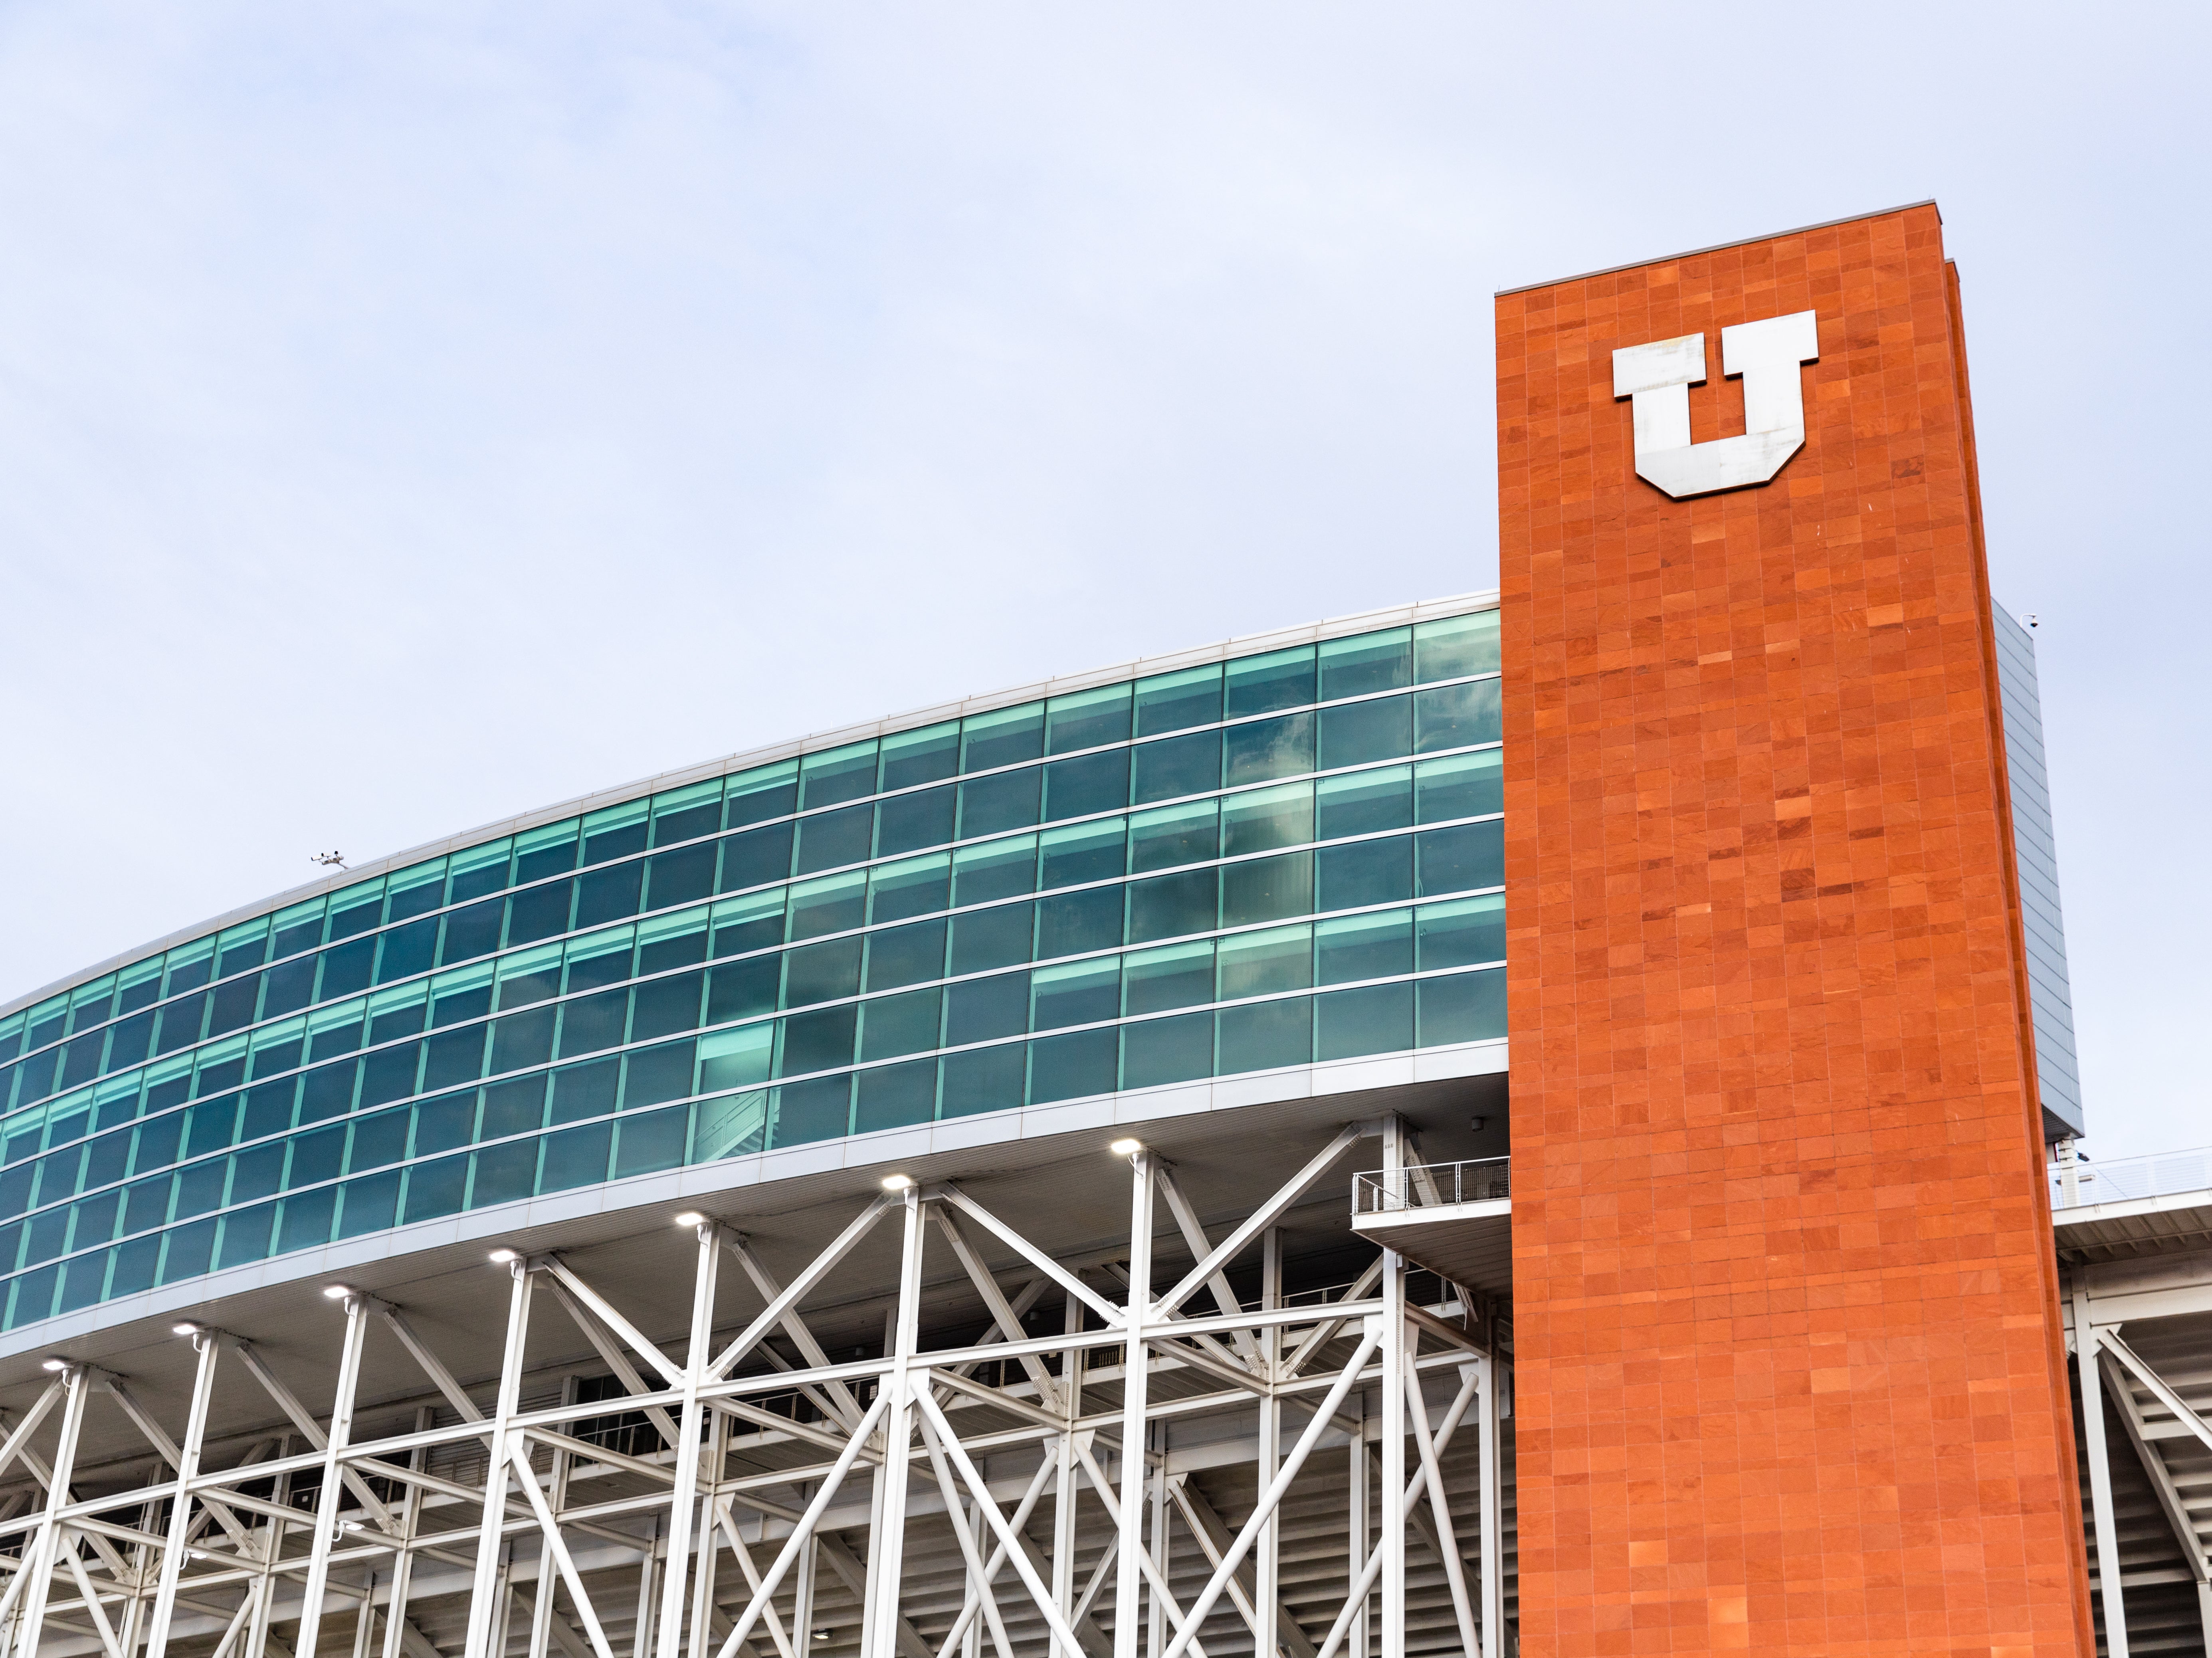 The Utah Utes football stadium in Salt Lake City, Utah